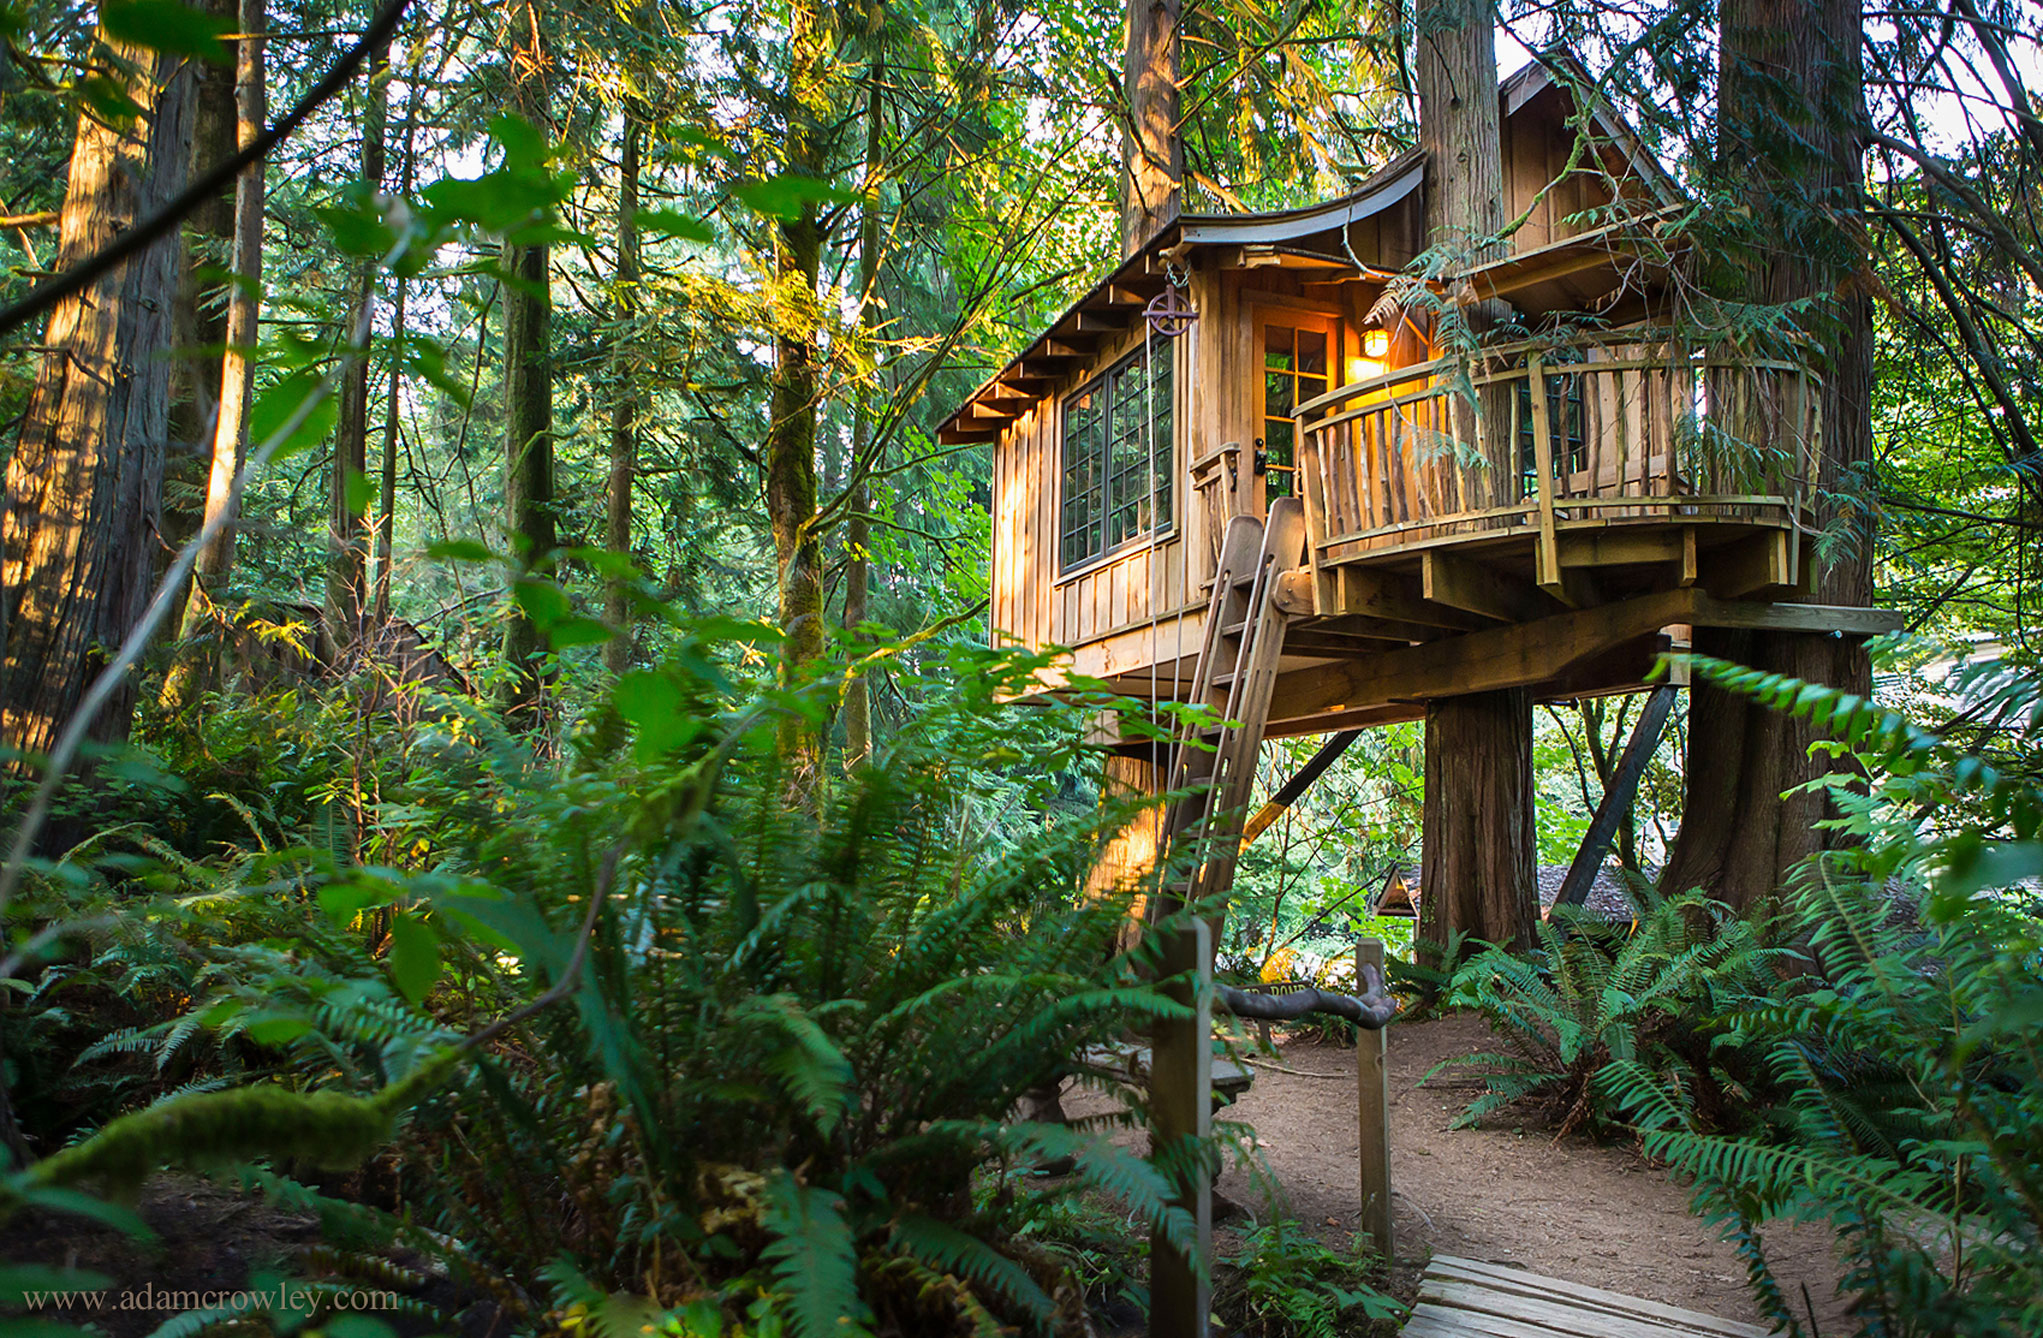 The Treehouses of Western Washington